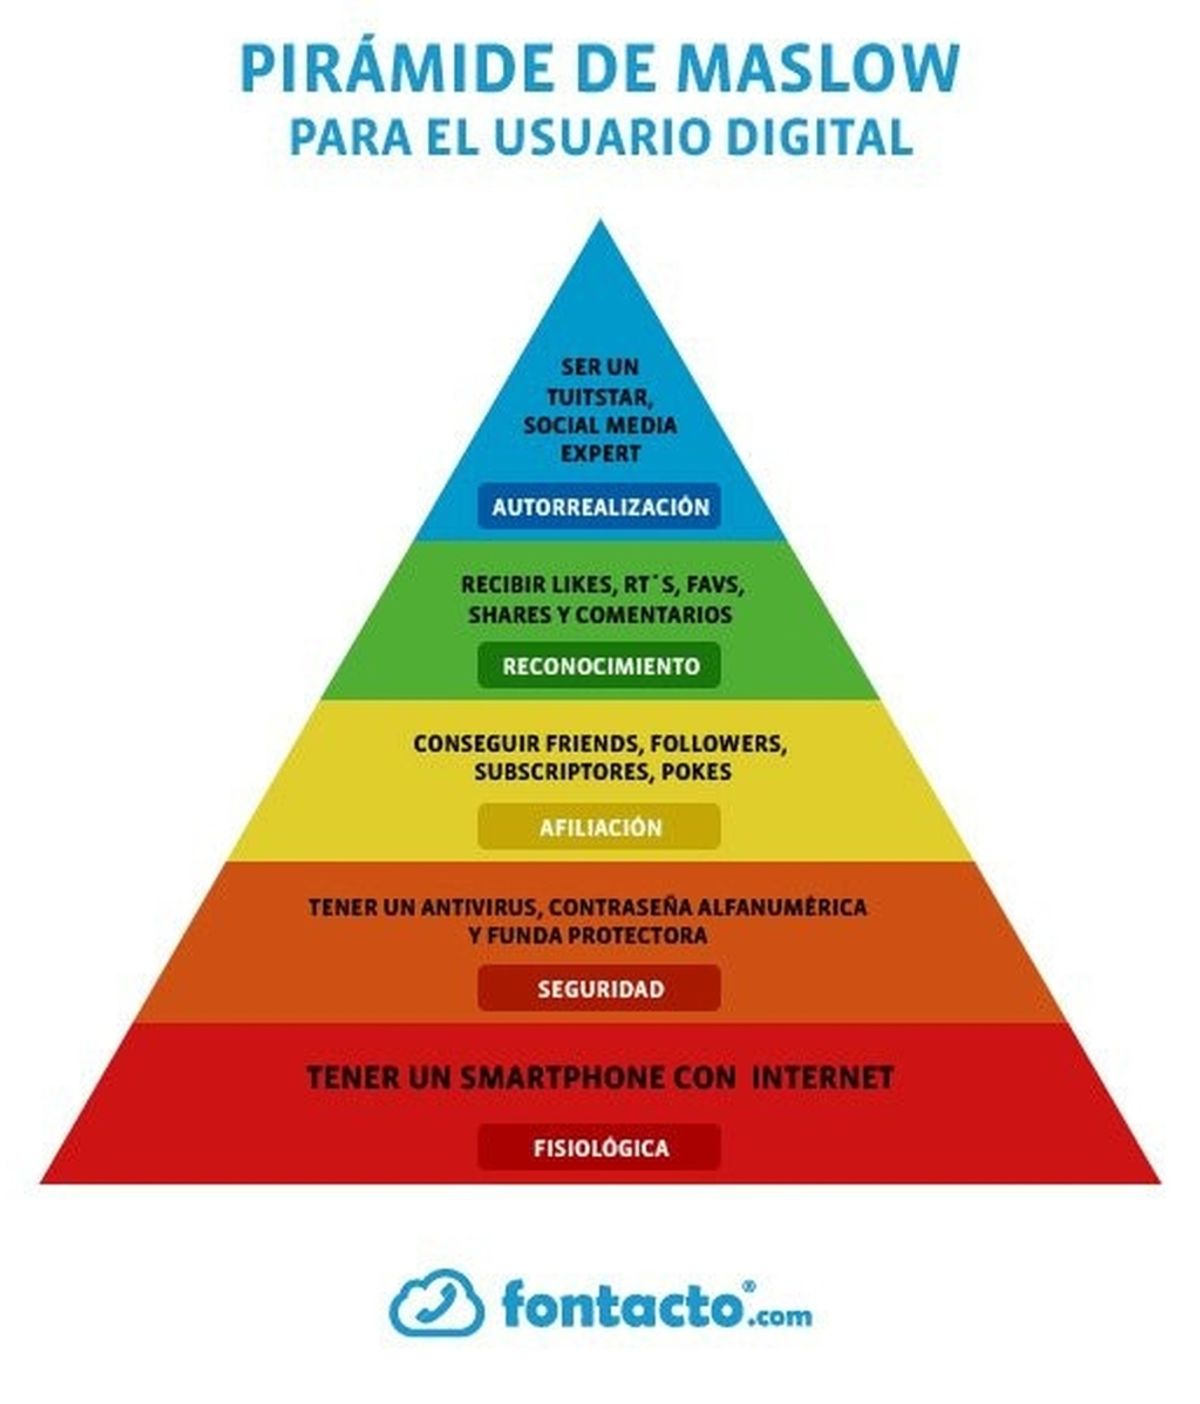 La pirámide de Maslow del usuario digital